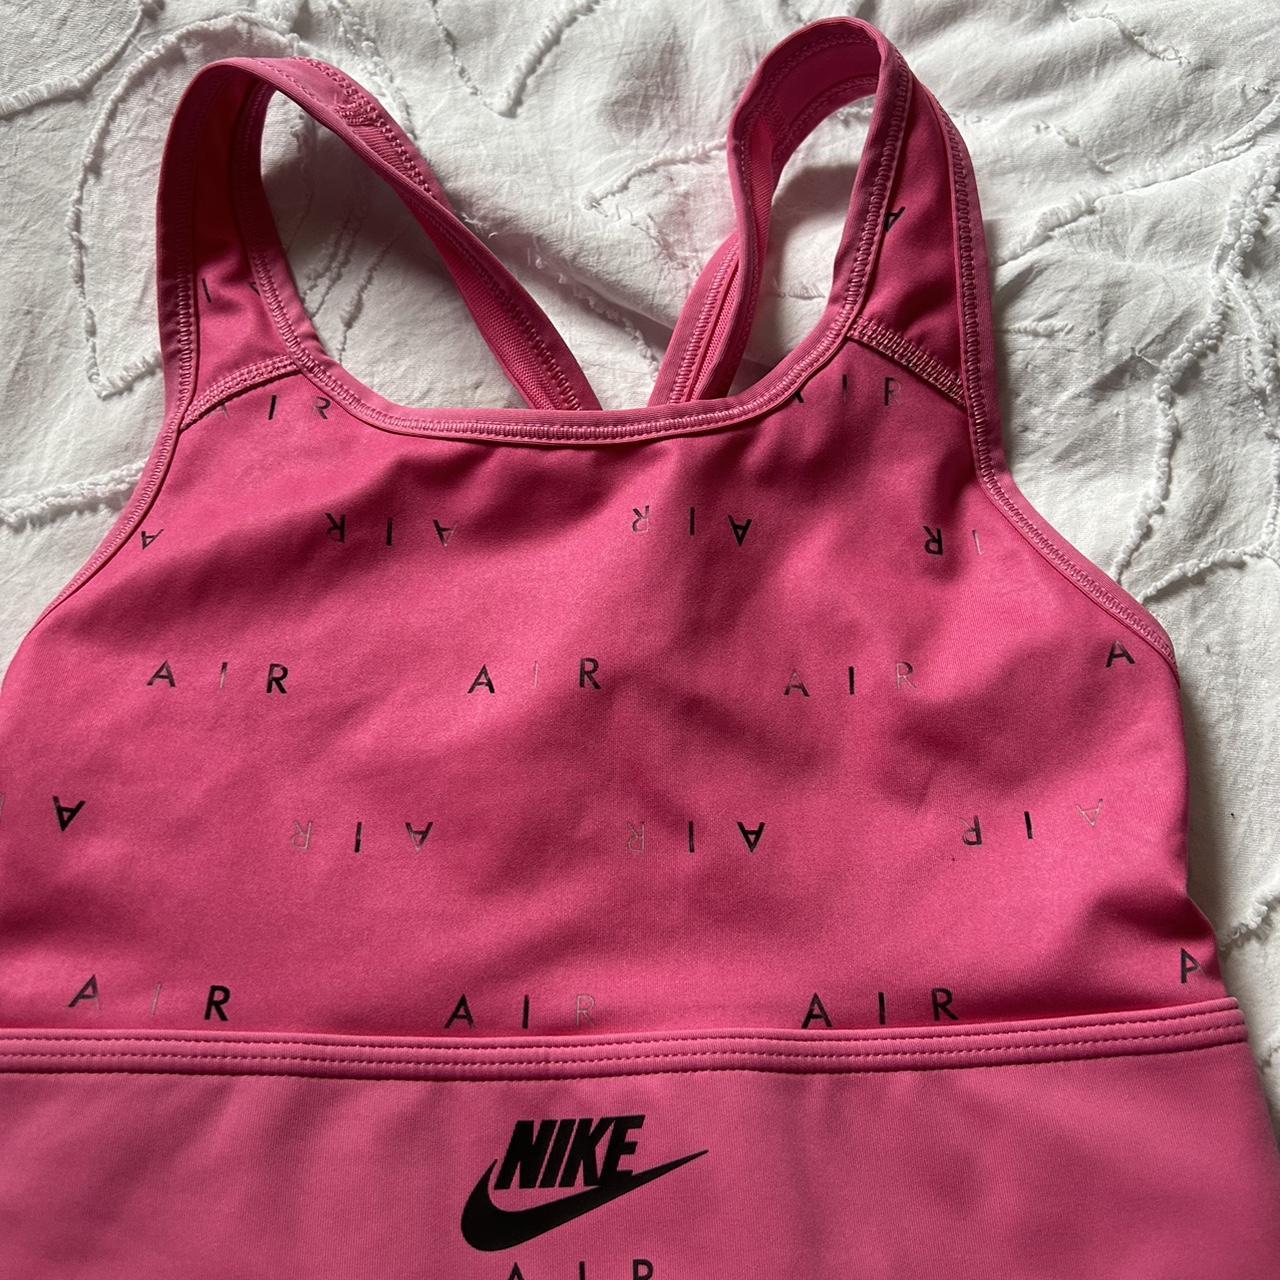 Pink Nike dri-fit sports bra Worn once but too... - Depop